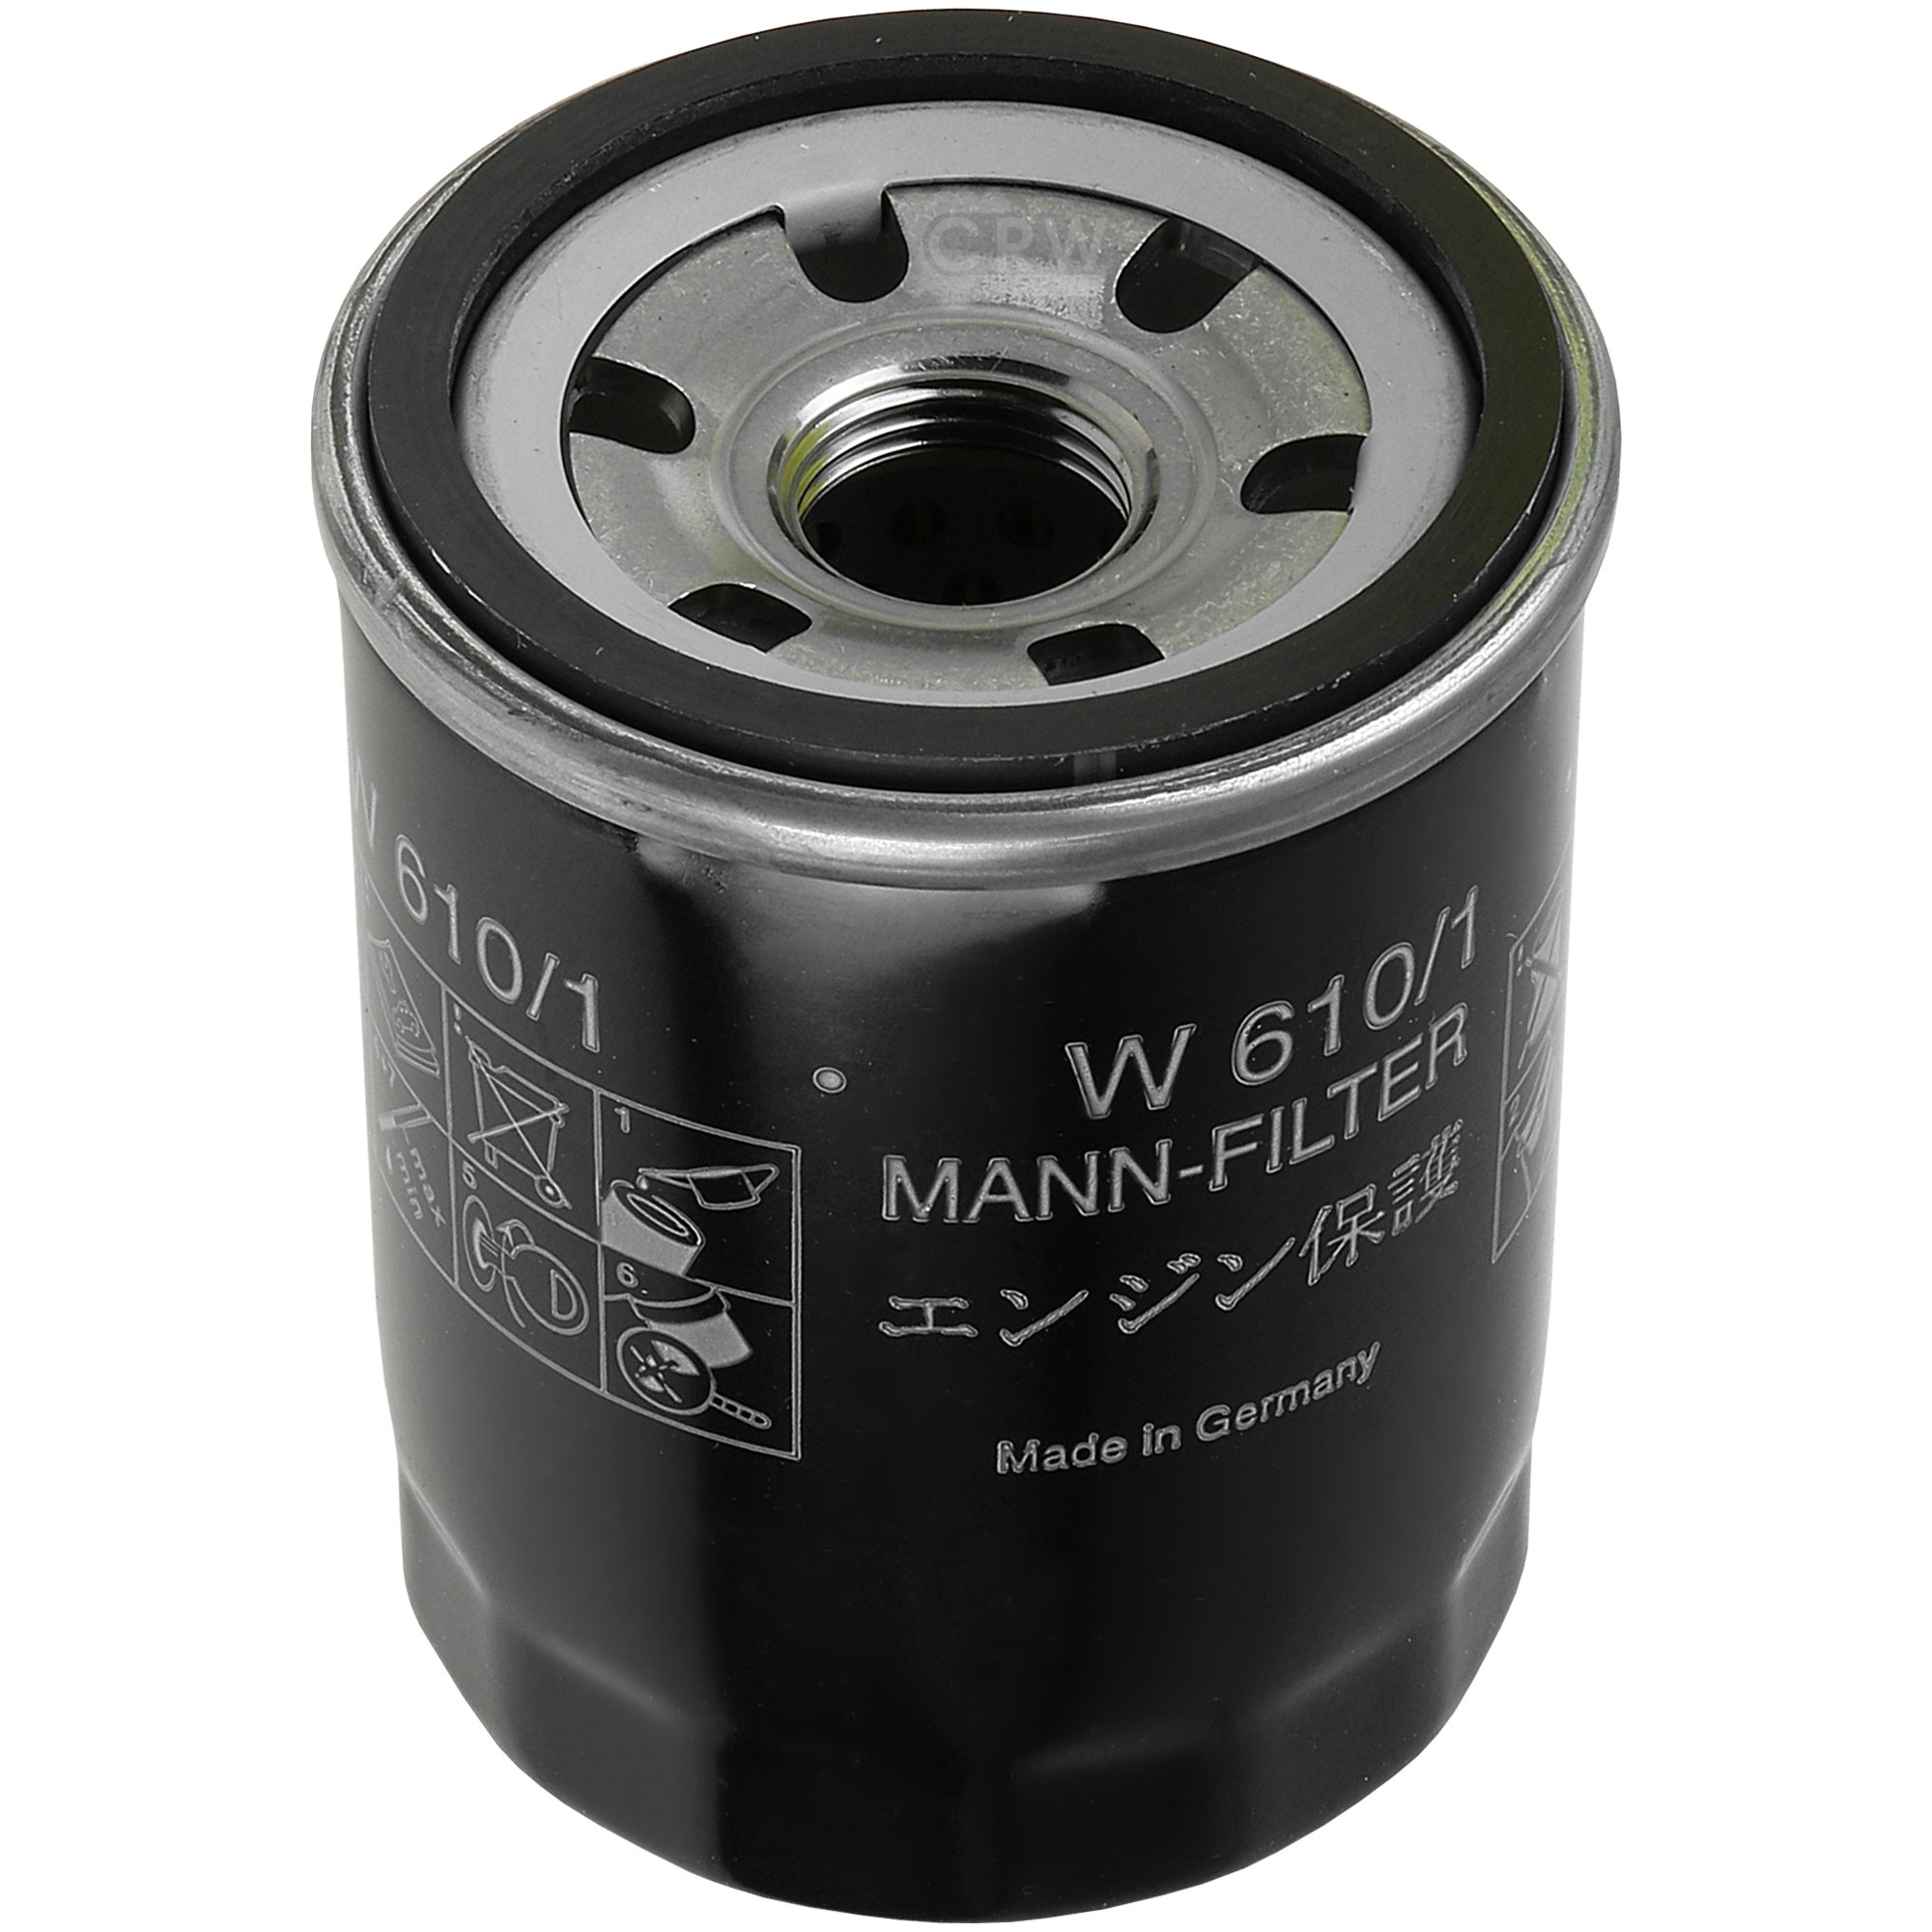 MANN-FILTER Ölfilter W 610/1 Oil Filter